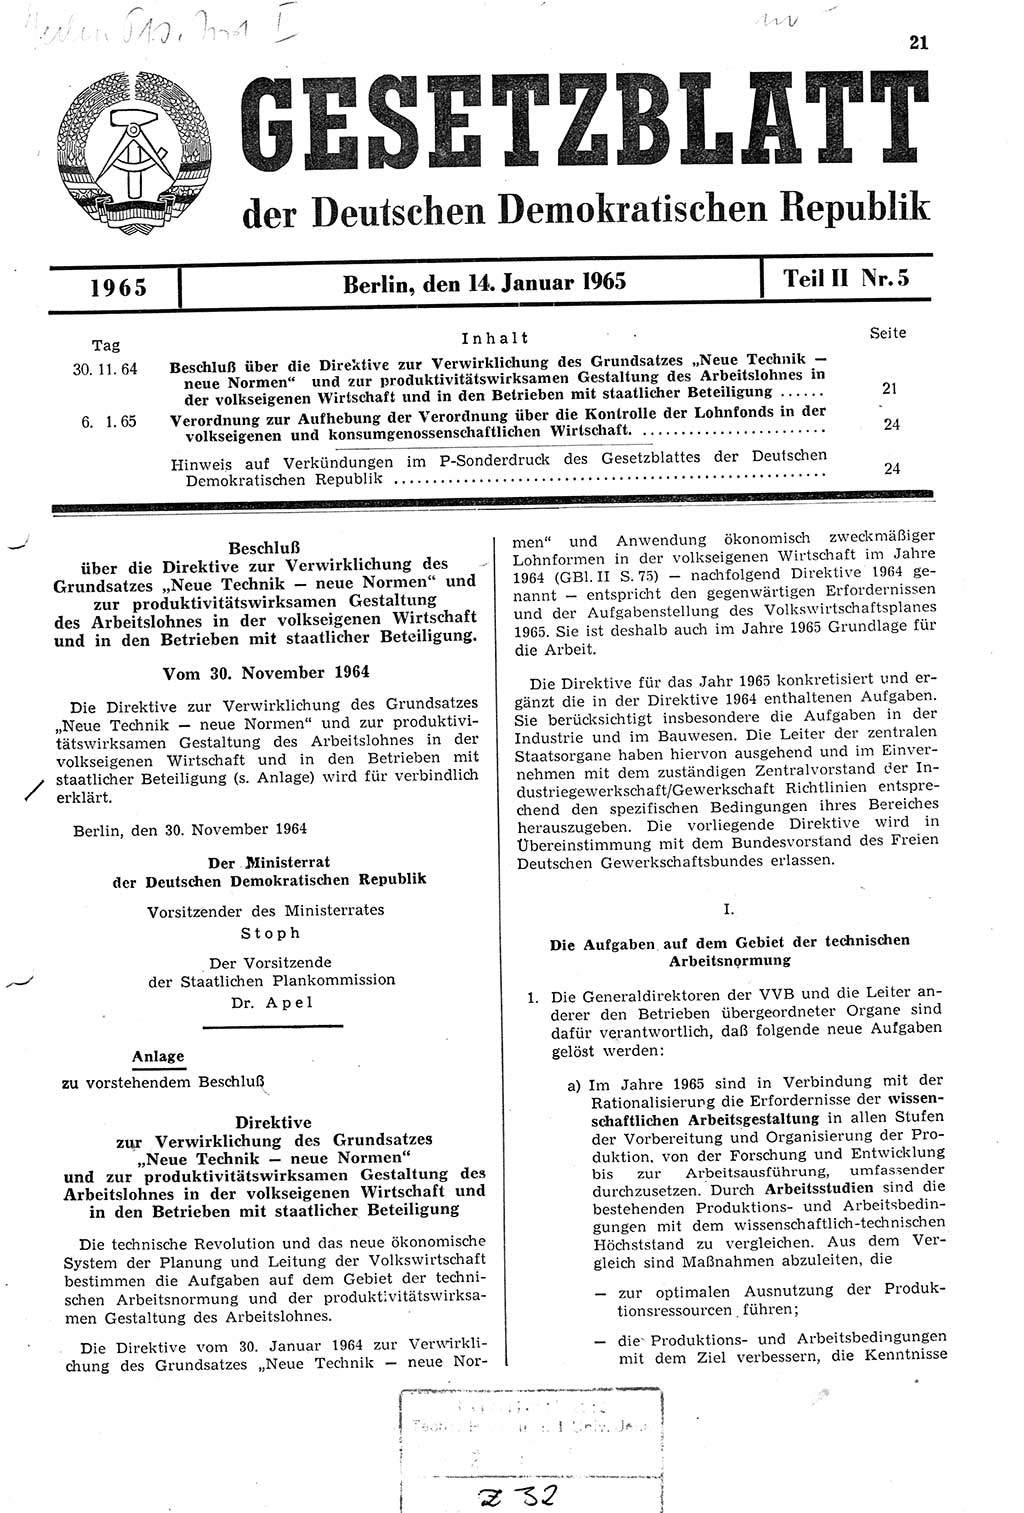 Gesetzblatt (GBl.) der Deutschen Demokratischen Republik (DDR) Teil ⅠⅠ 1965, Seite 21 (GBl. DDR ⅠⅠ 1965, S. 21)